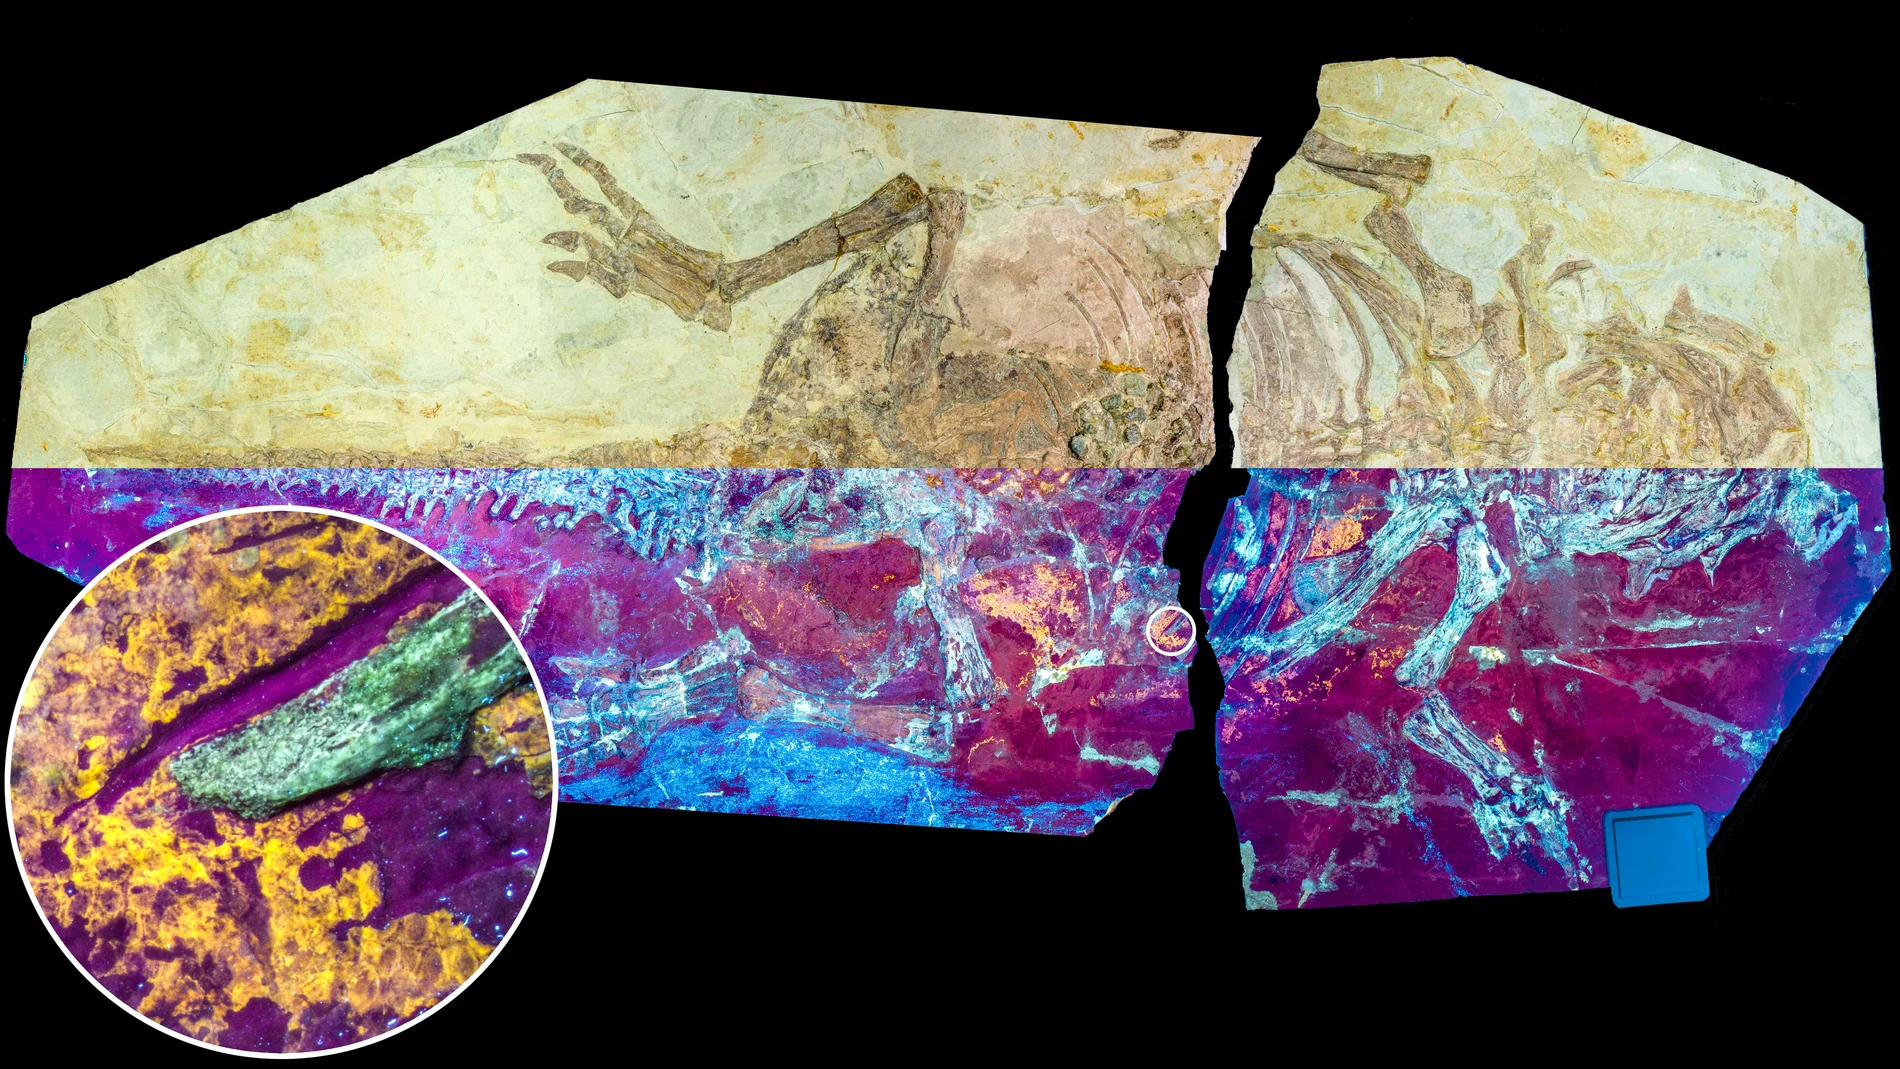 Se estudió el espécimen de dinosaurio NJUES-10 bajo luz natural (mitad superior) y luz UV (mitad inferior), mostrando la fluorescencia naranja-amarilla de la piel fósil. 